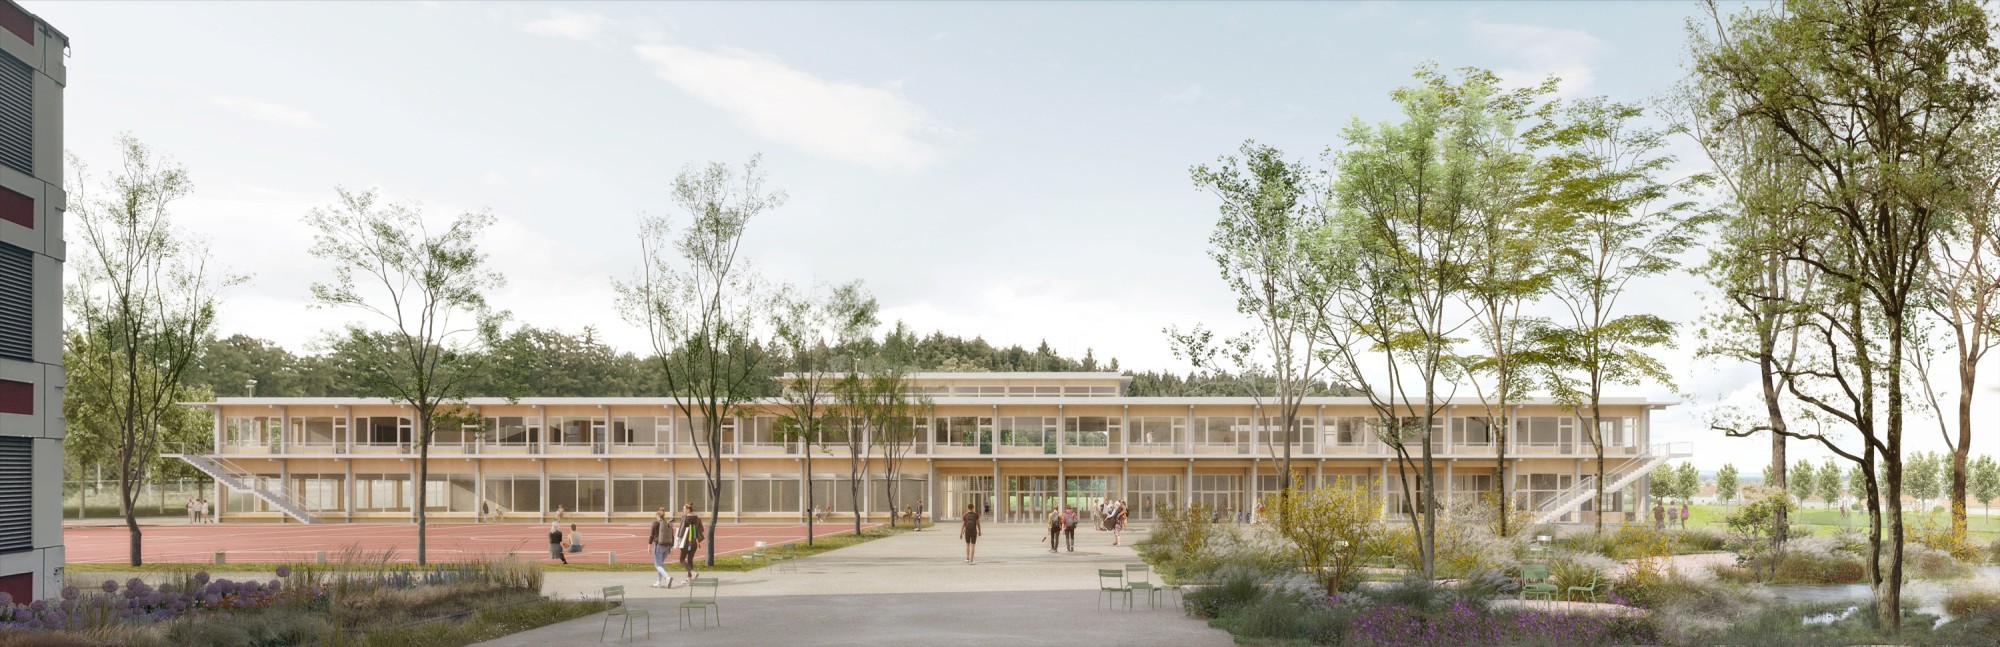 Visualisierung Neubau Erweiterung Kantonsschule Reussbühl Luzern